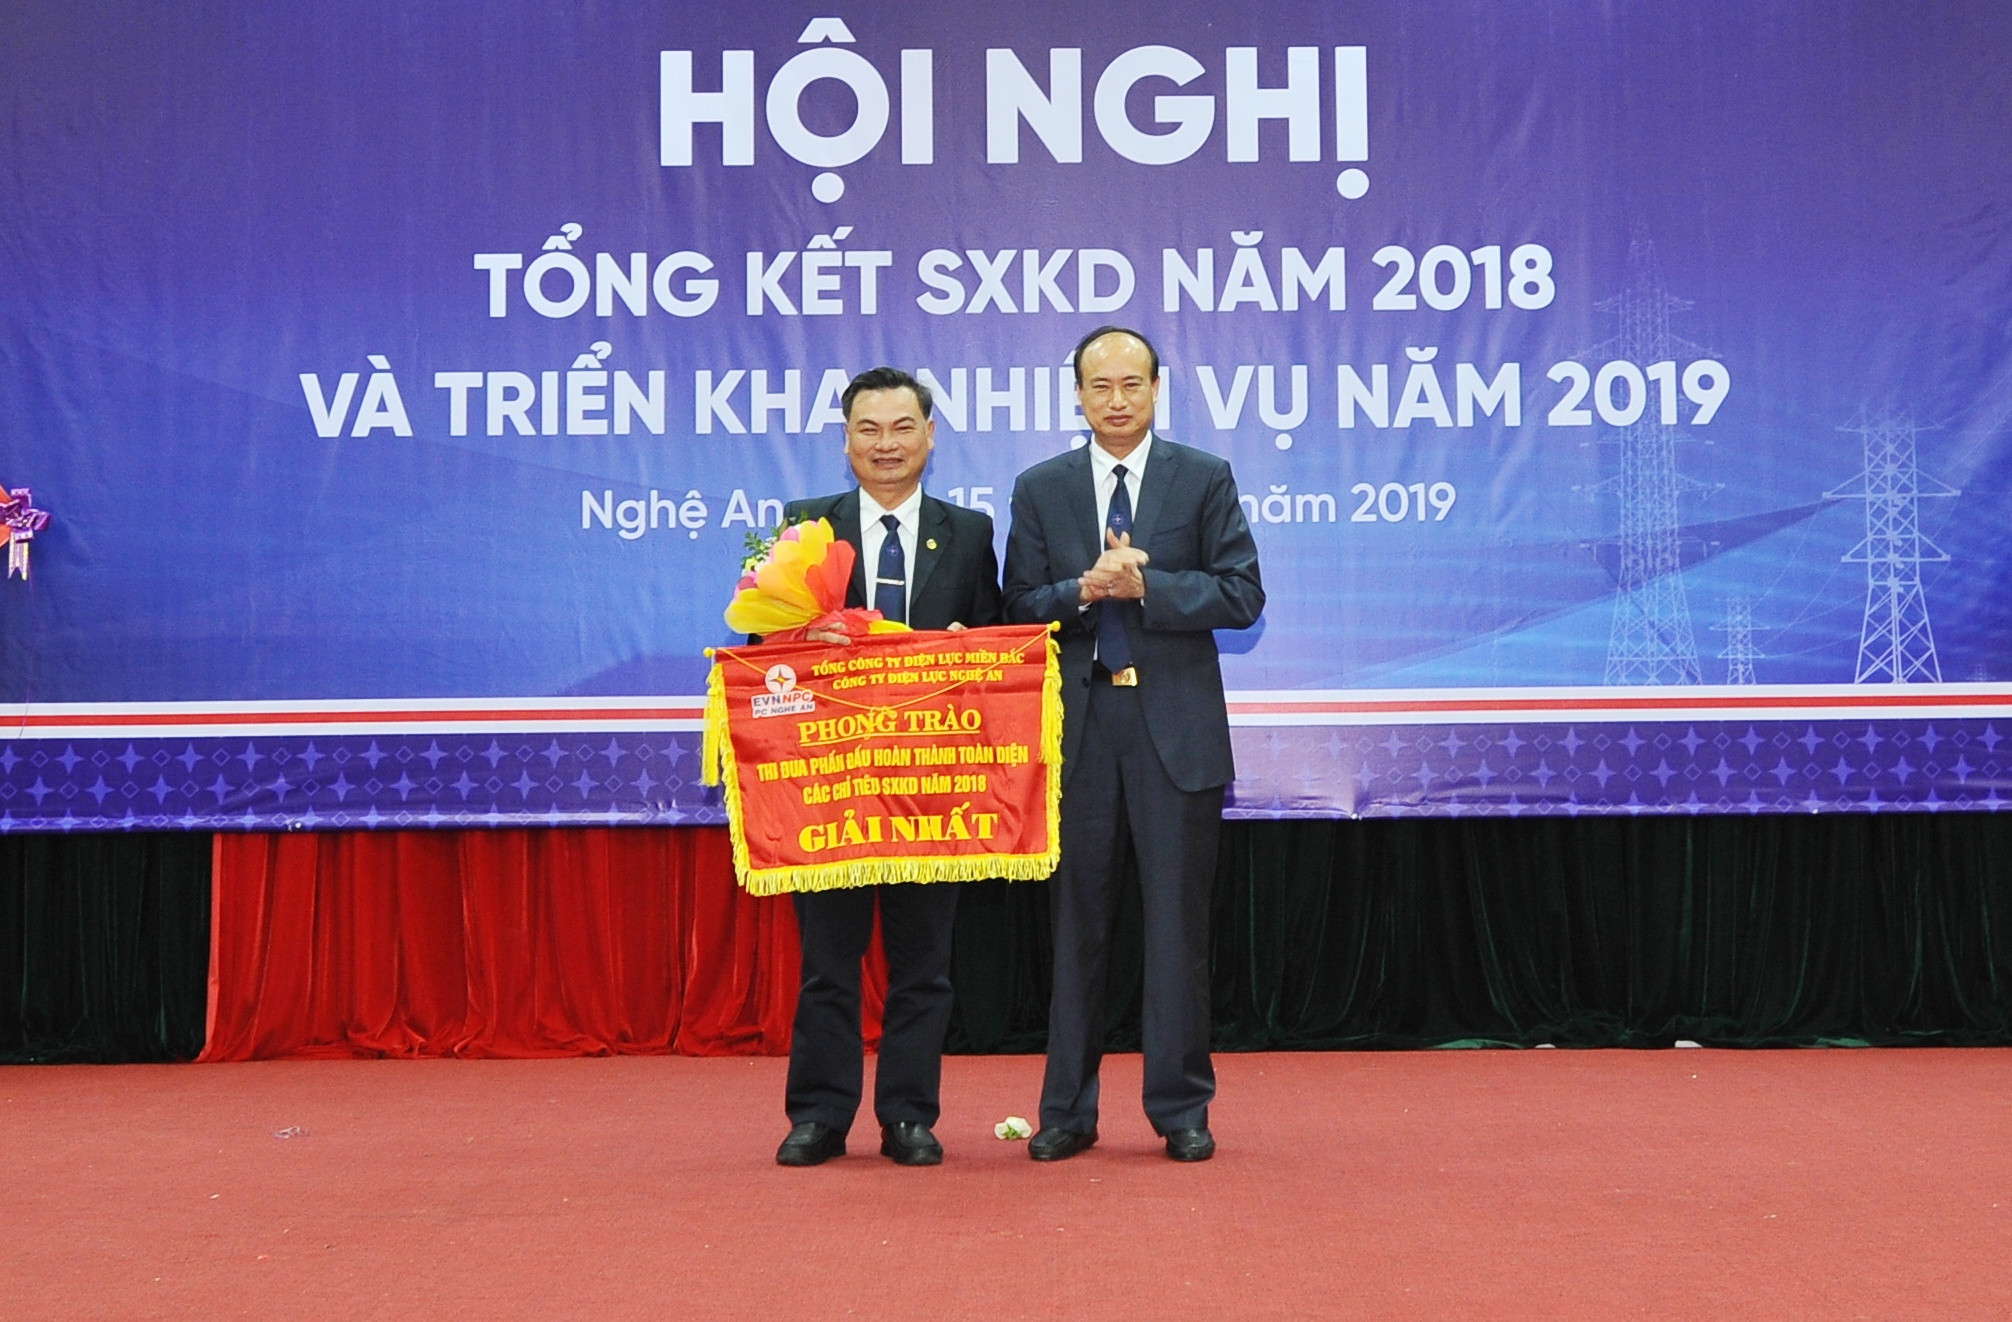 Ông Trịnh Phương Trâm -Giám đốc Công ty Điện lực Nghệ An khẳng định năm 2019 sẽ cung cấp đủ điện 